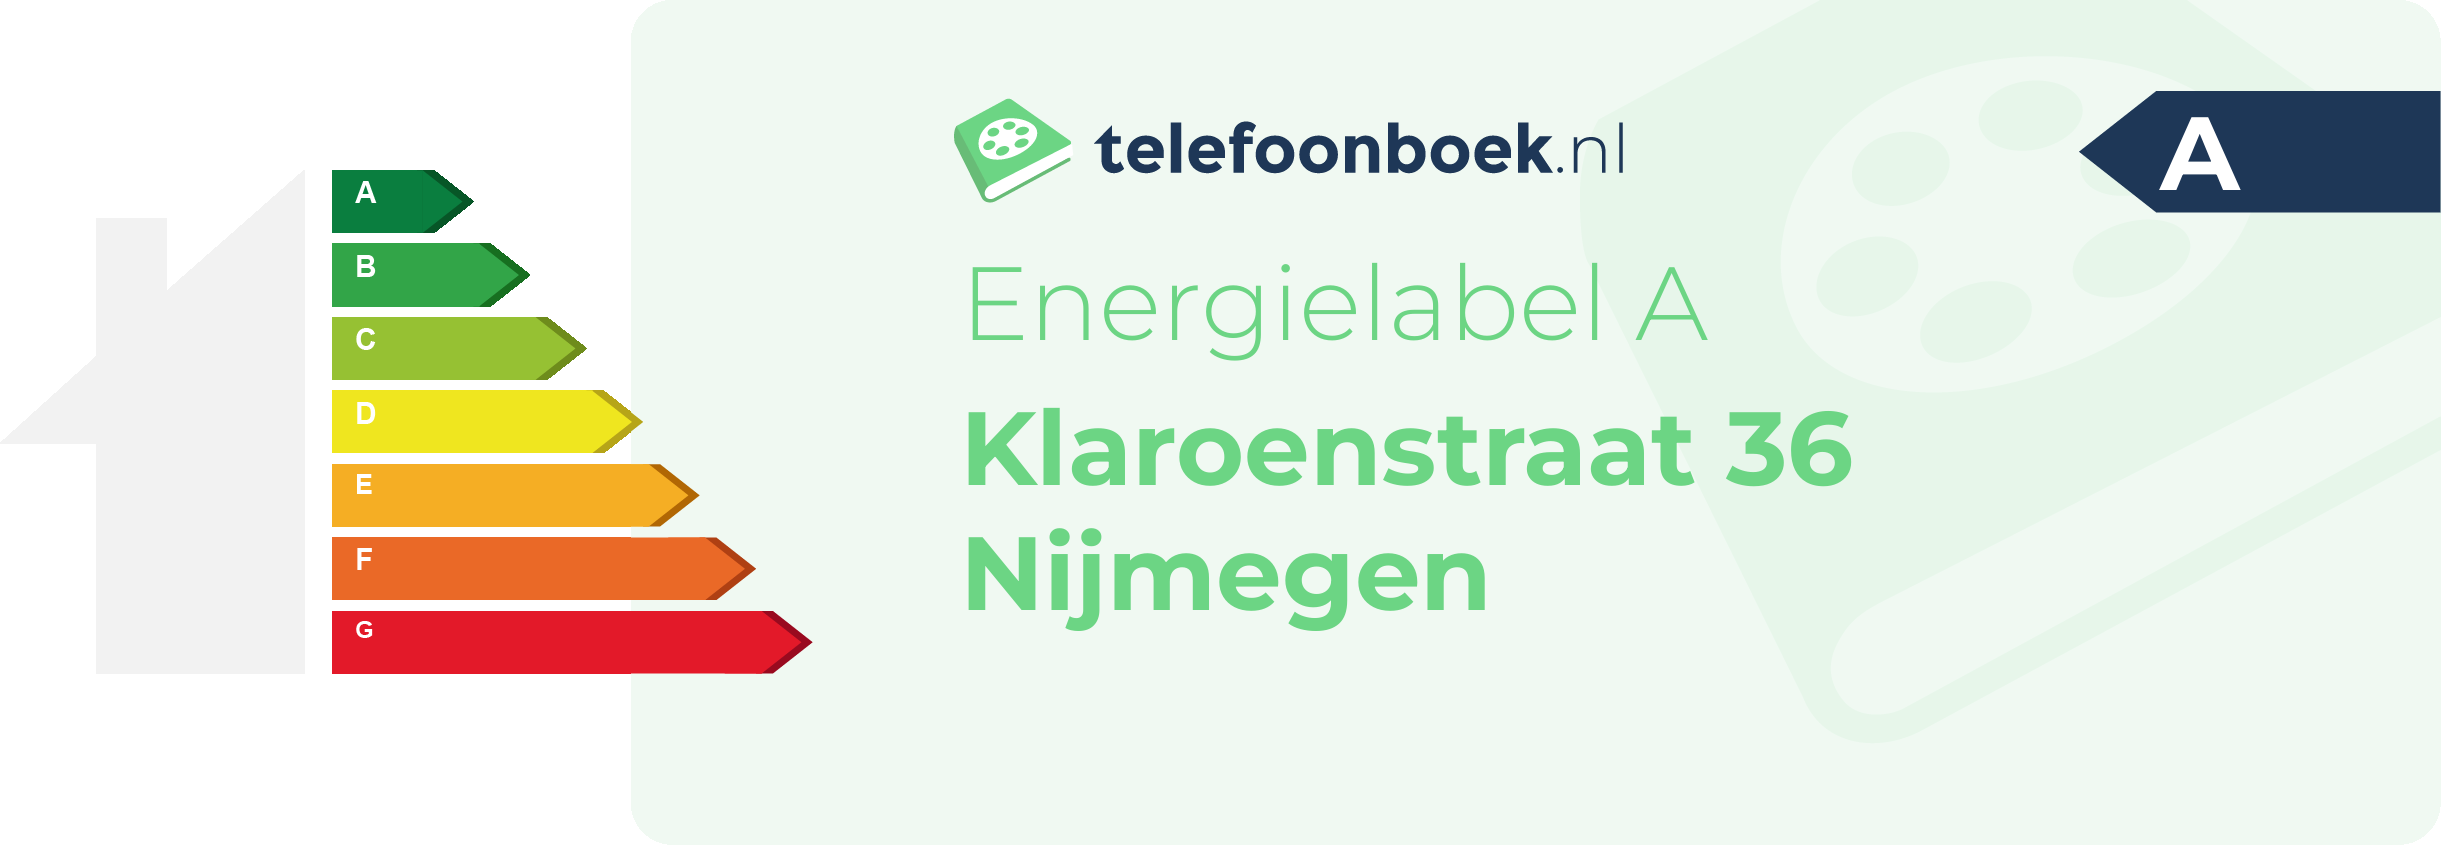 Energielabel Klaroenstraat 36 Nijmegen